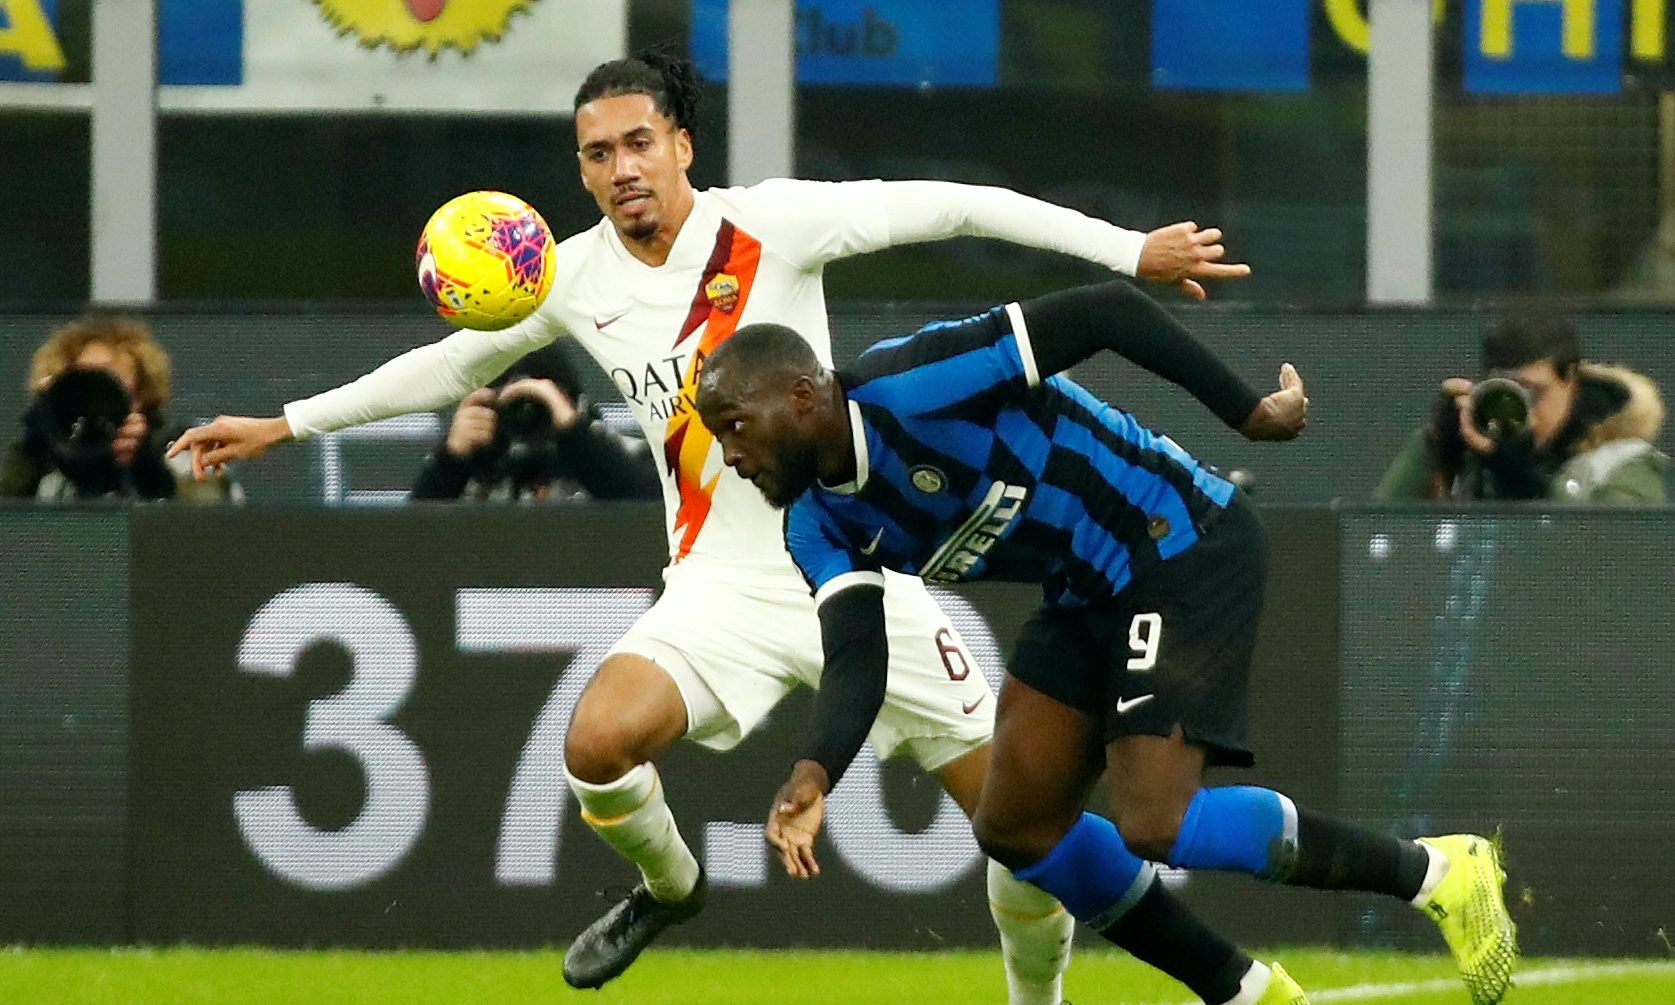 Serie A - Inter Milan v AS Roma